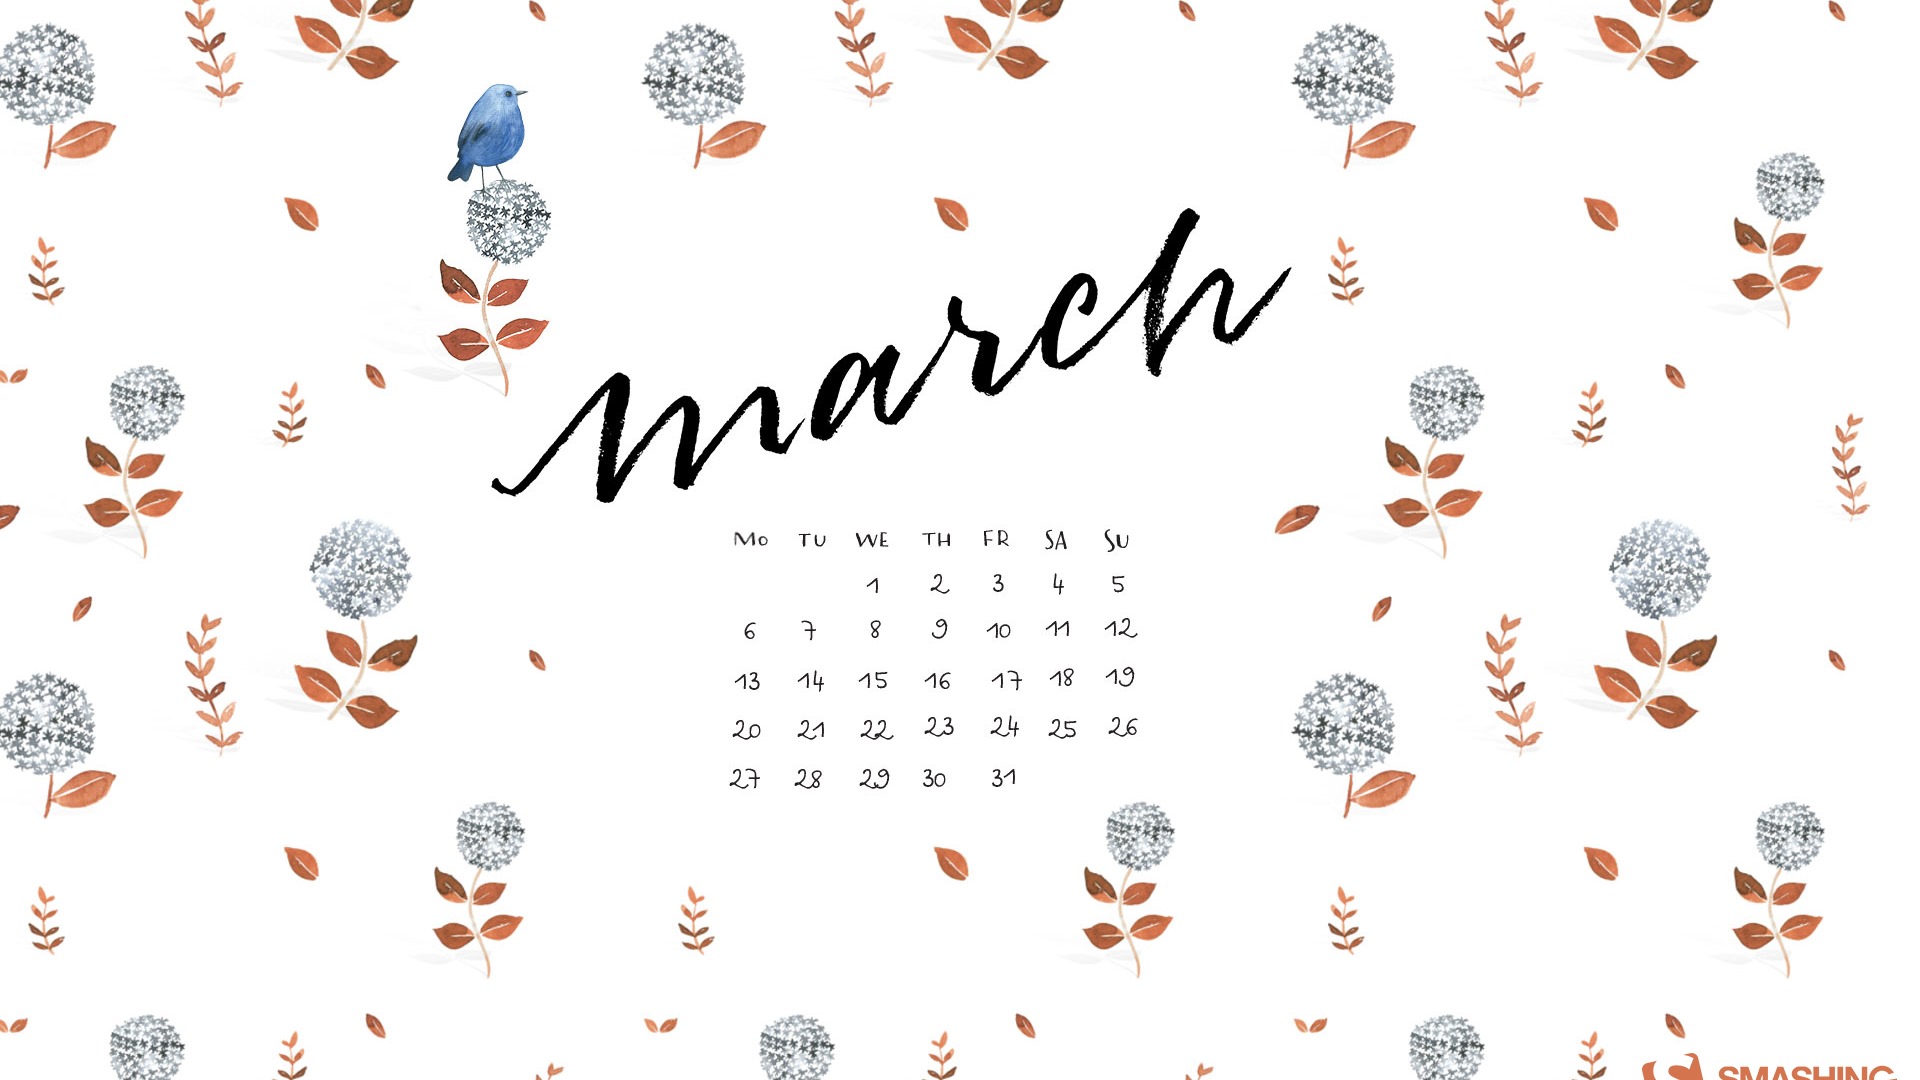 March 2017 calendar wallpaper (2) #15 - 1920x1080